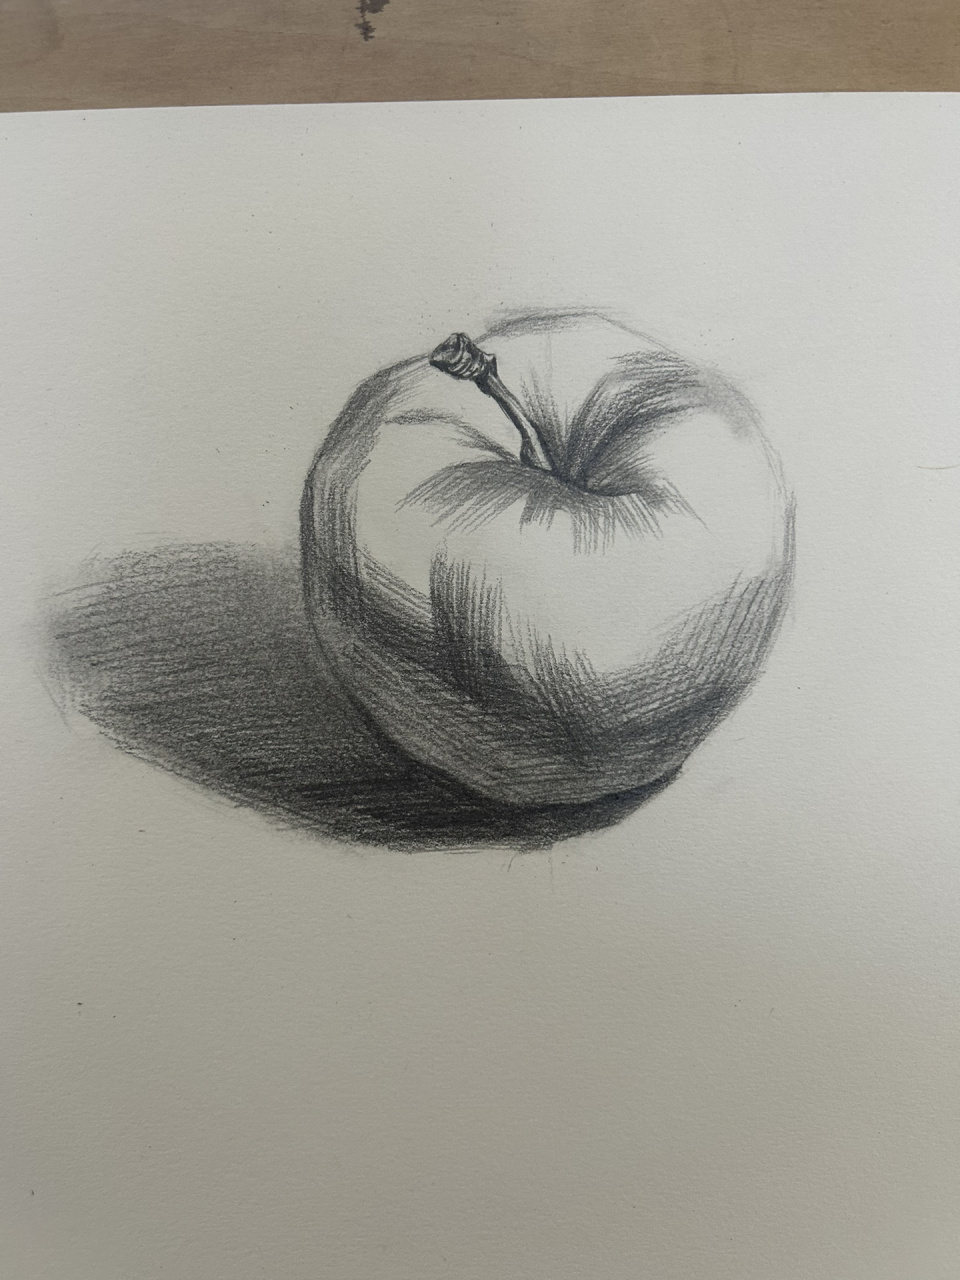 今日素描练习 带基础班学生一起画苹果